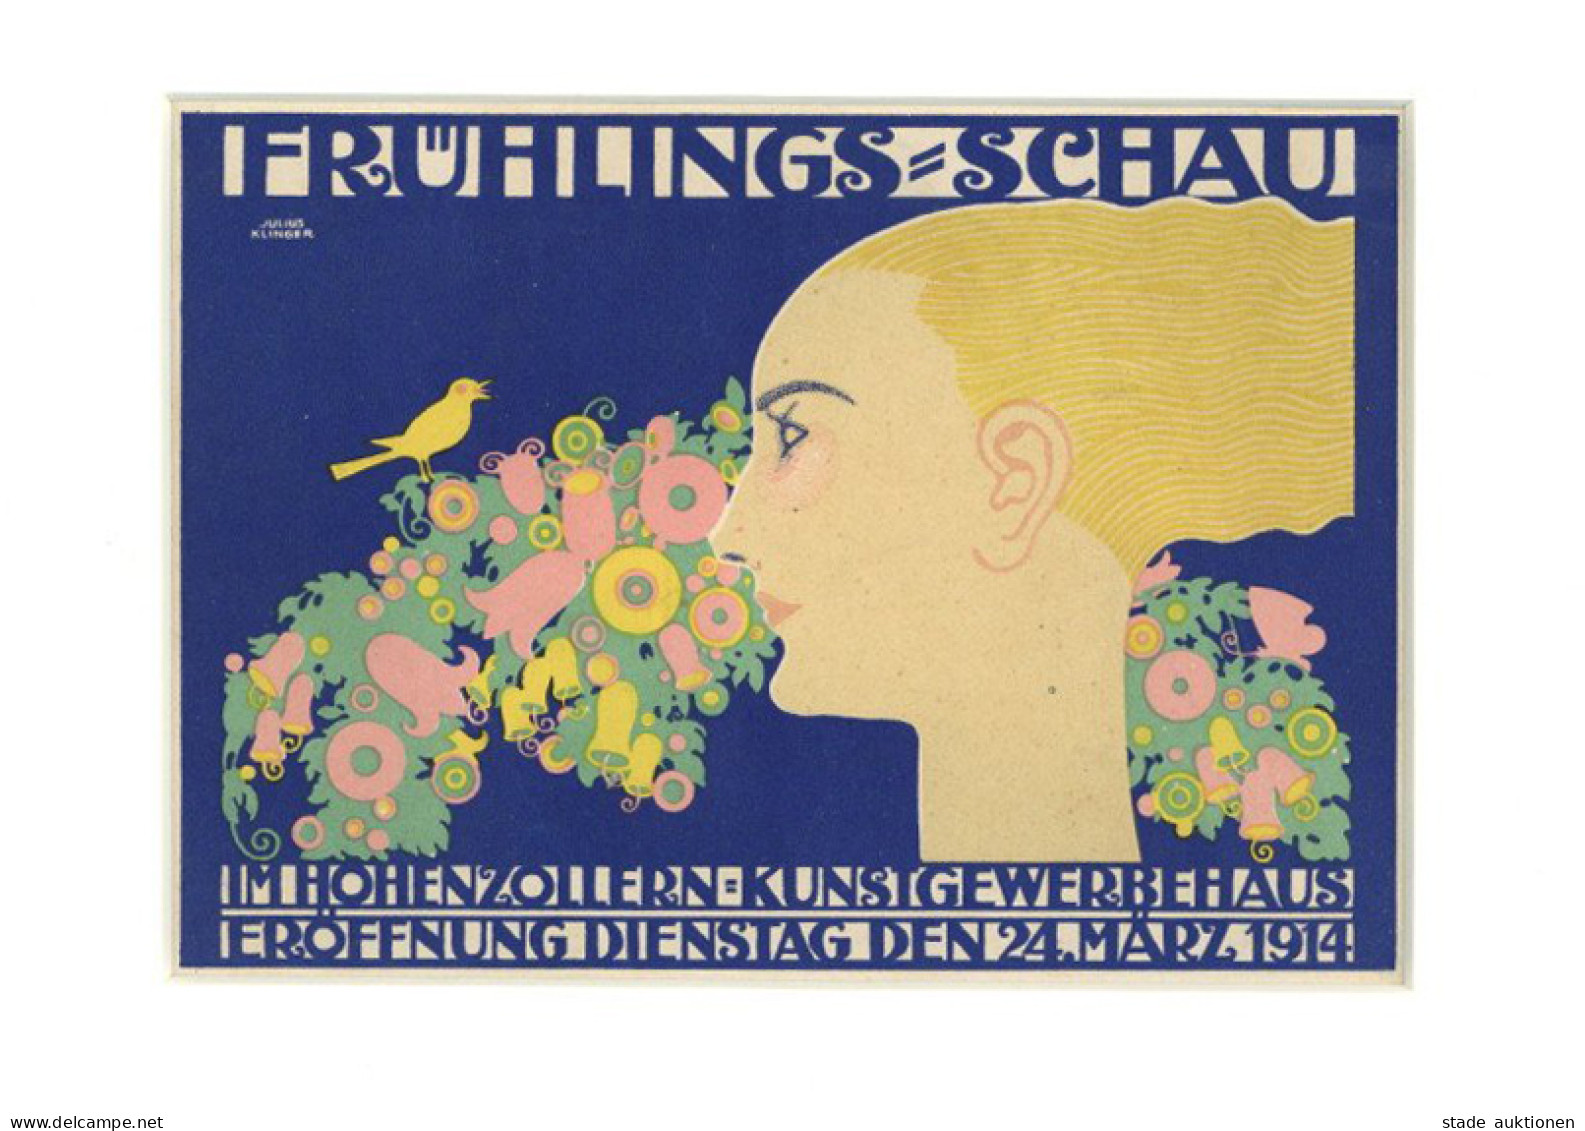 Werbung Kleinplakat Frühlings-Schau Im Hohenzollern Kunstgewerbehaus 24. März 1914 I-II Publicite - Werbepostkarten